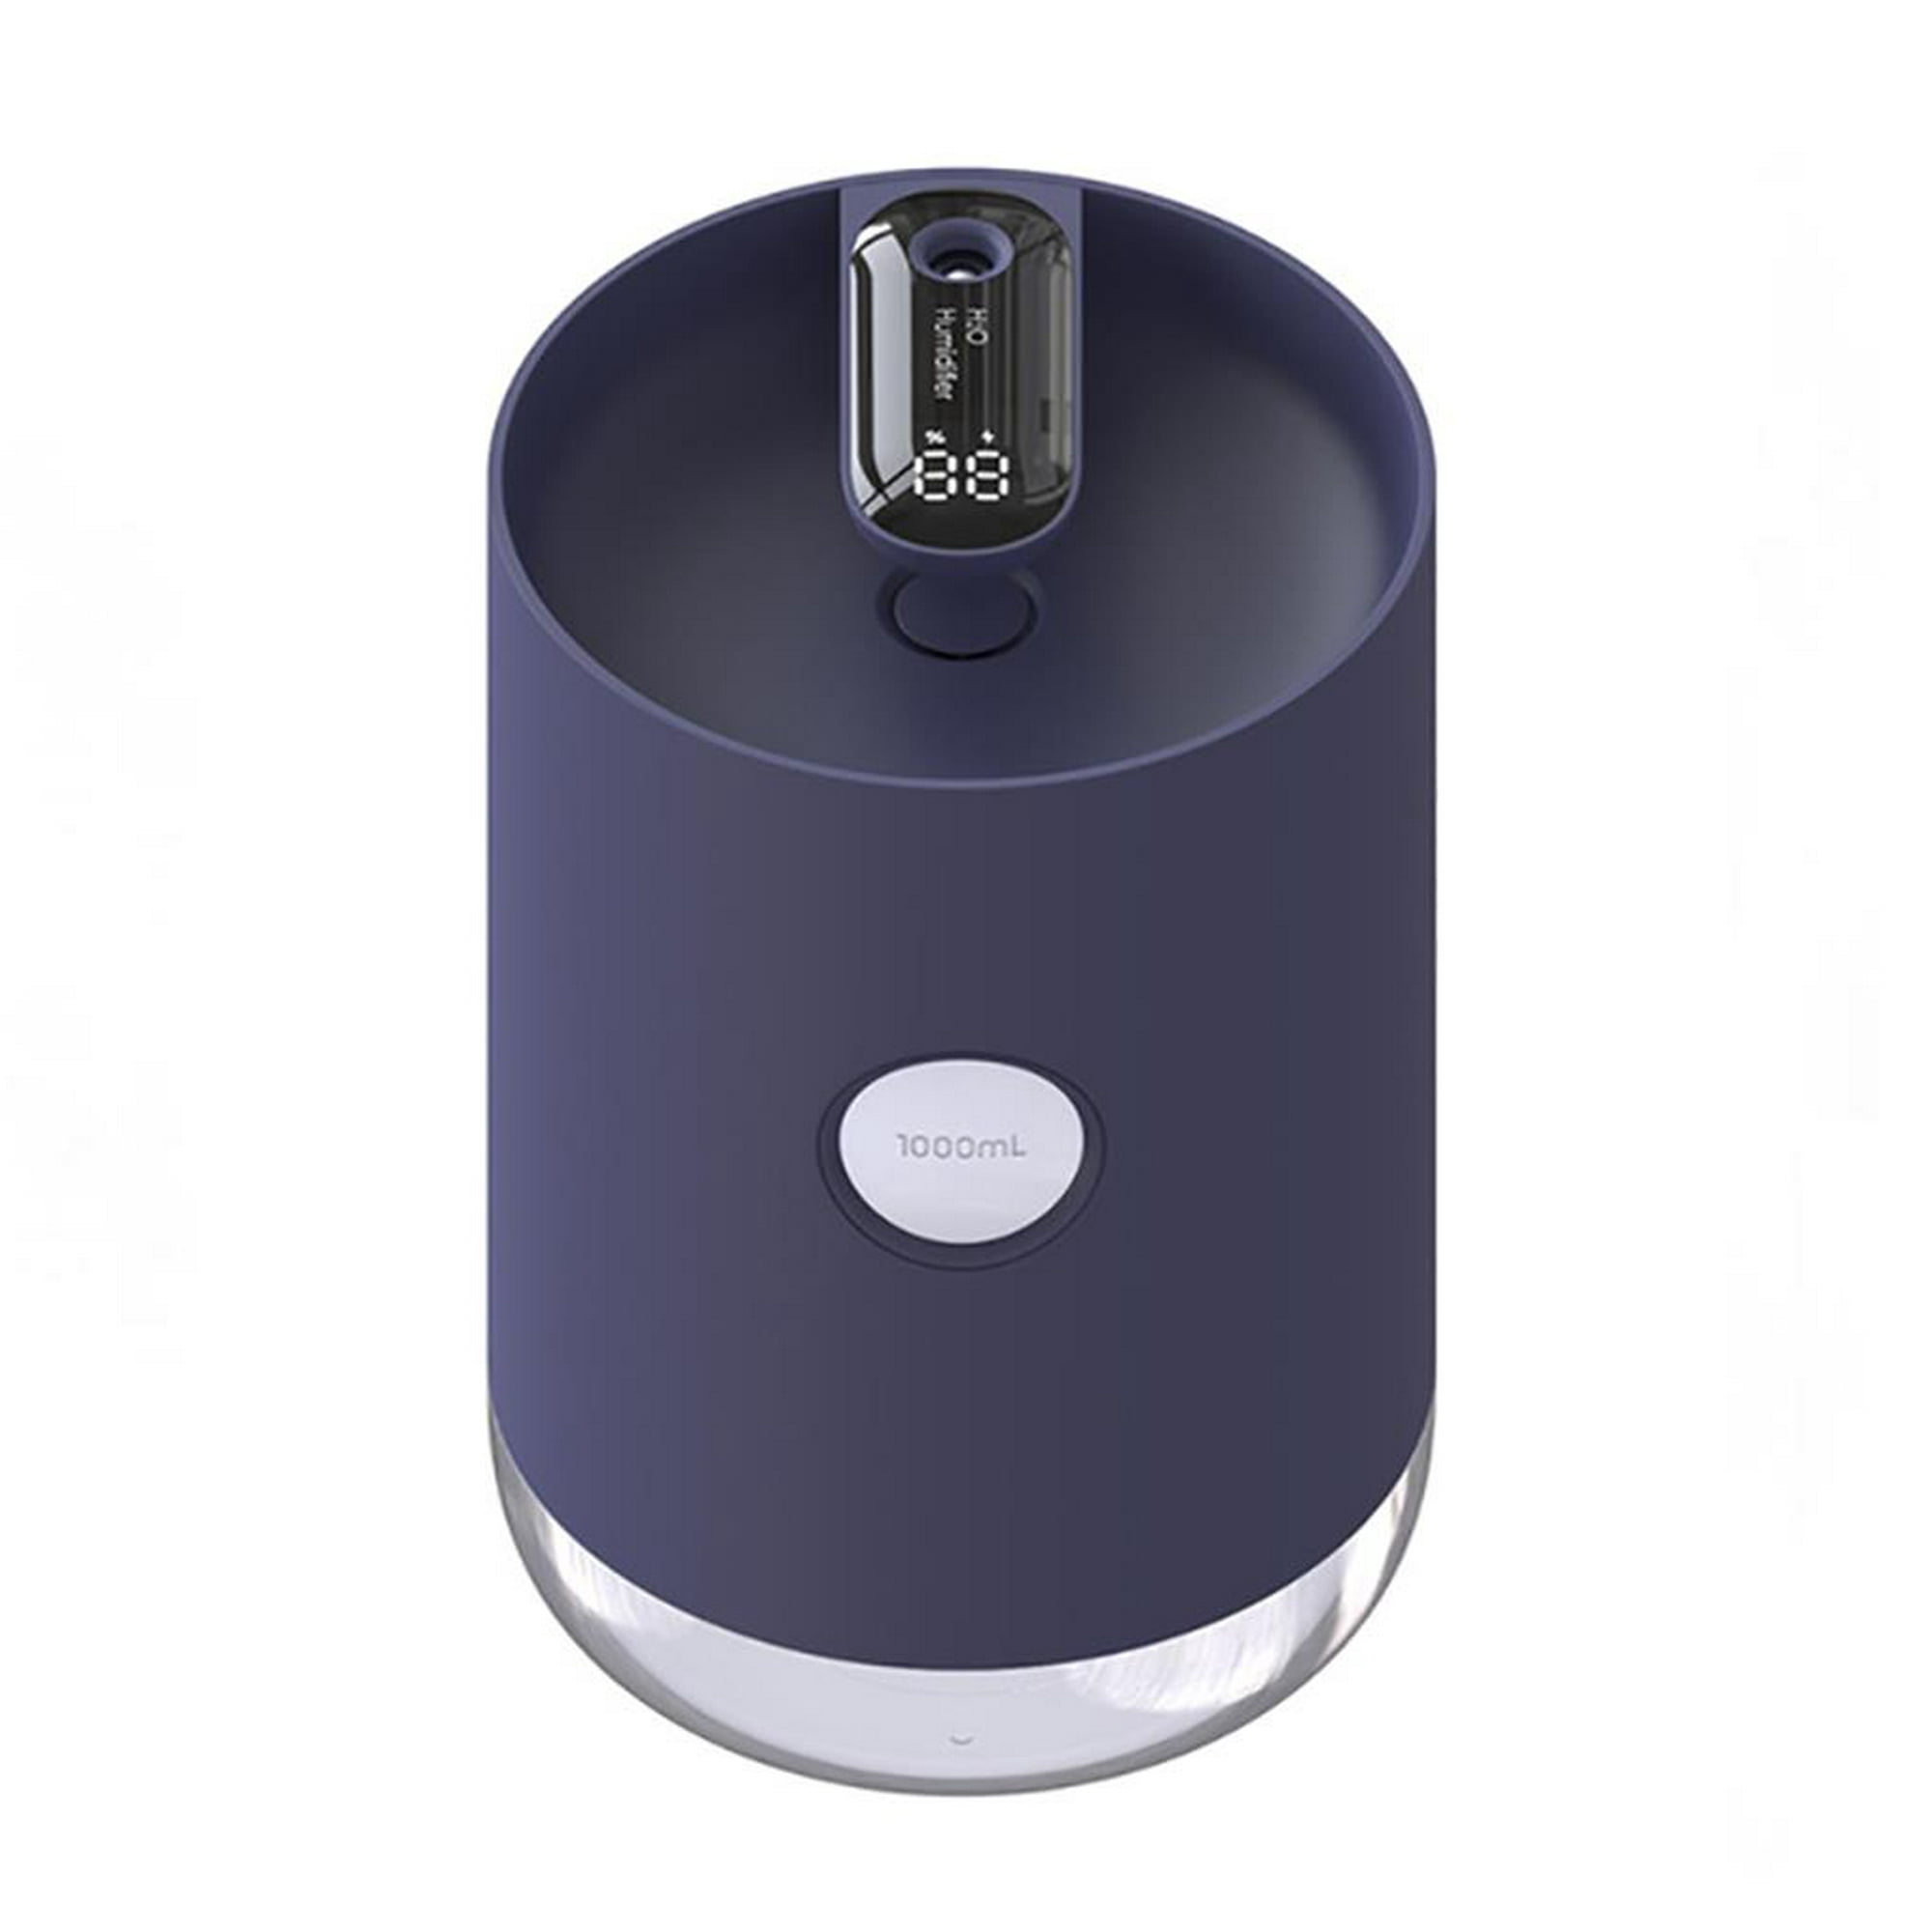  Humidificador de aire alimentado humidificador USB 7.4 fl oz  oficina coche viaje Hoom : Hogar y Cocina